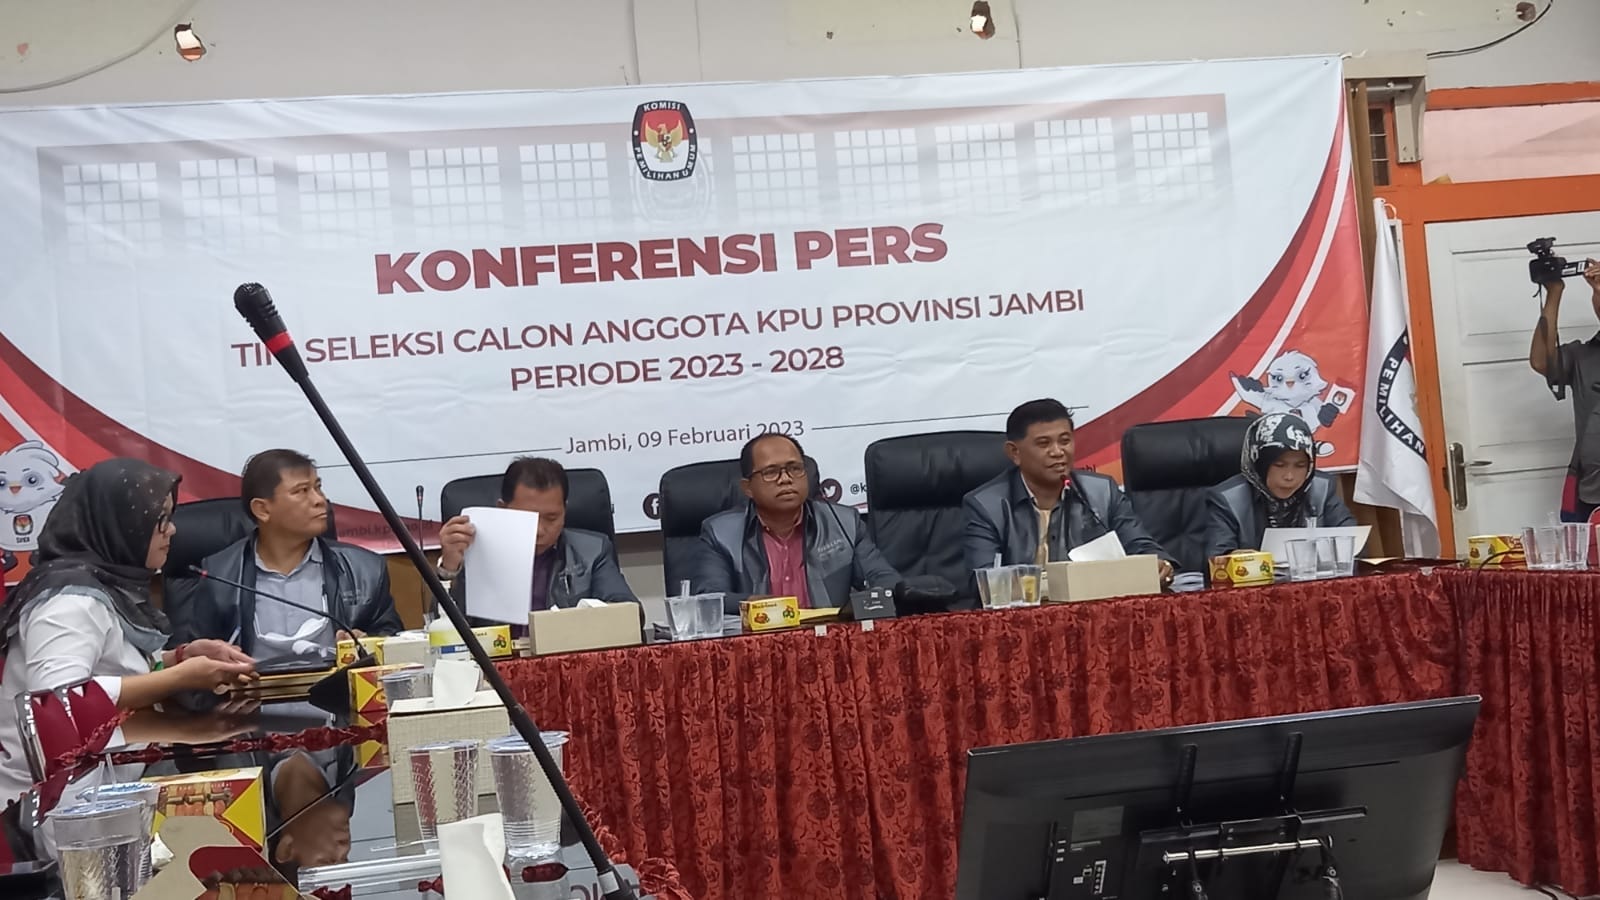 Resmi Dimulai, Timsel Sampaikan Tahapan Seleksi Calon Anggota KPU Provinsi Jambi